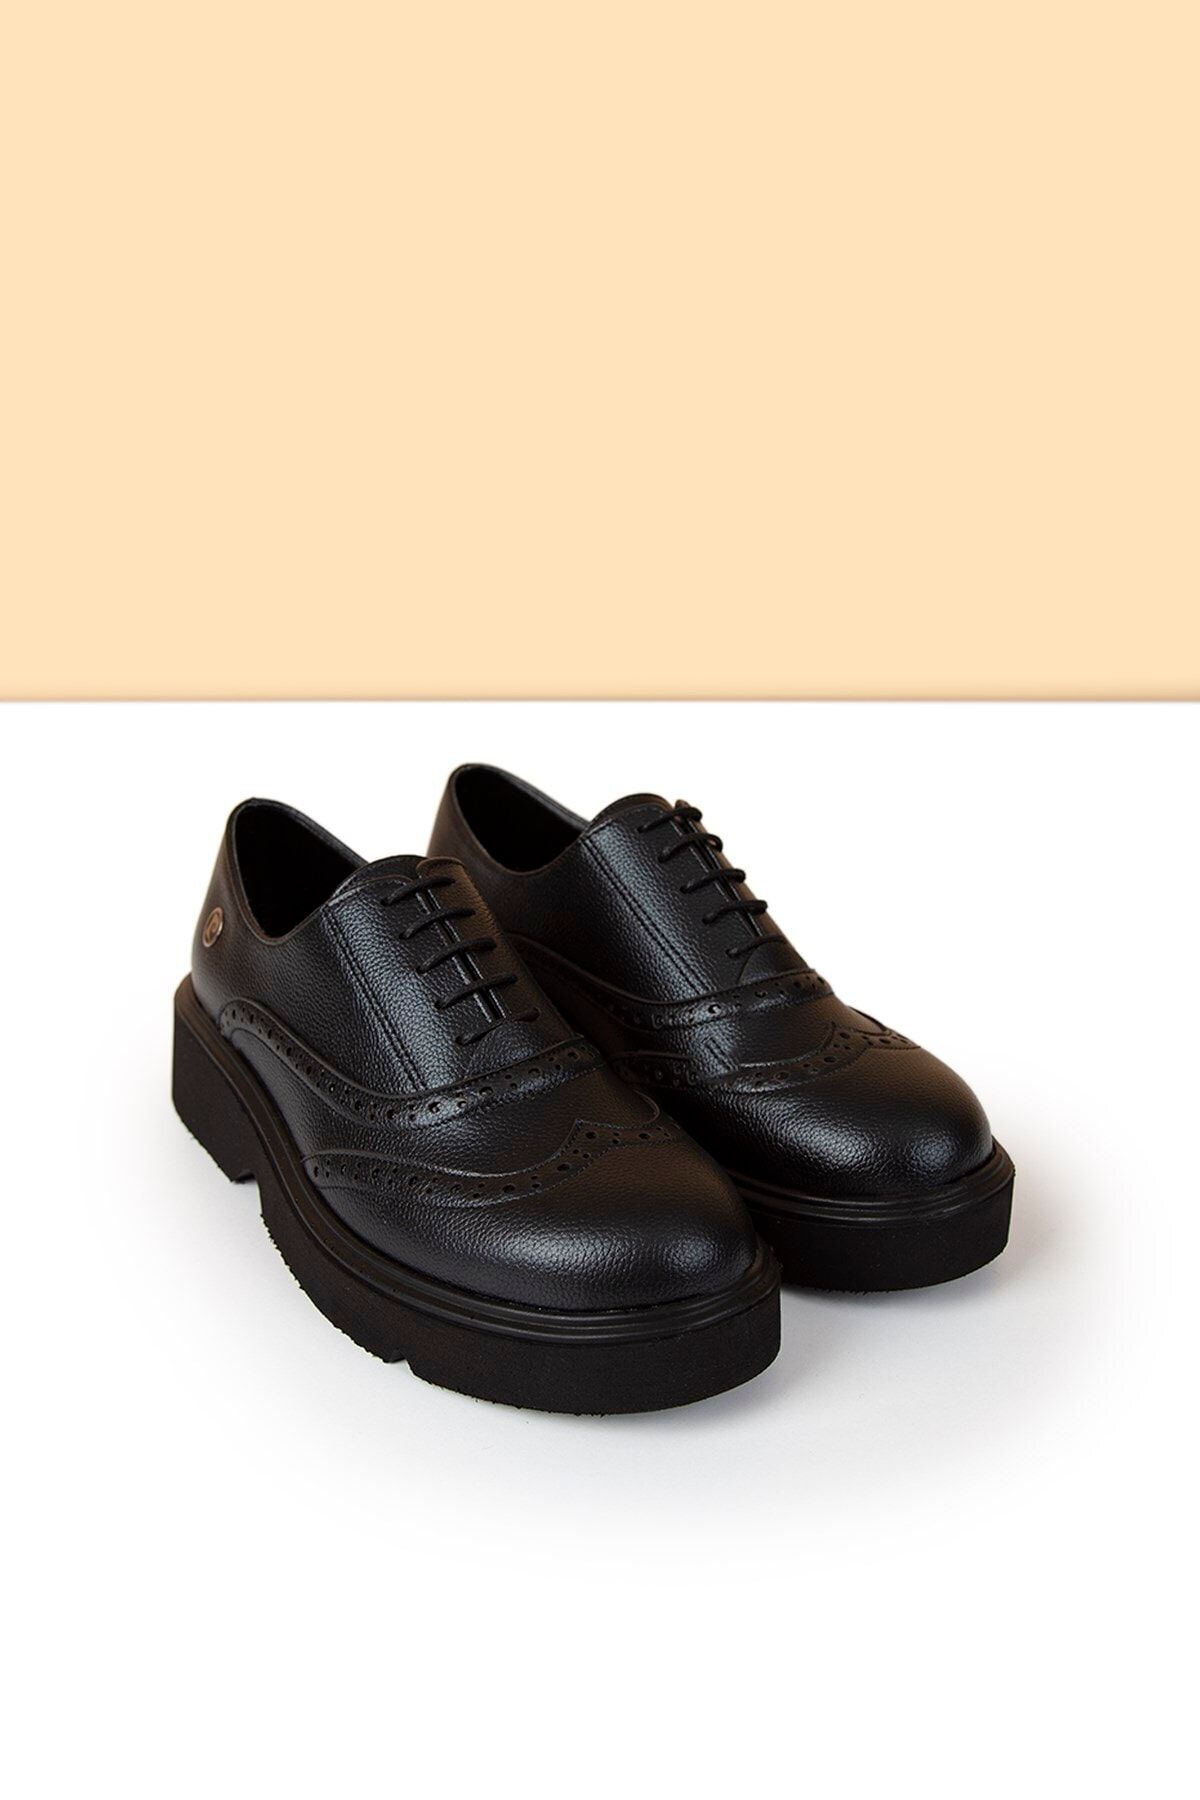 Pierre Cardin PC-50420 Siyah Kadın Ayakkabı